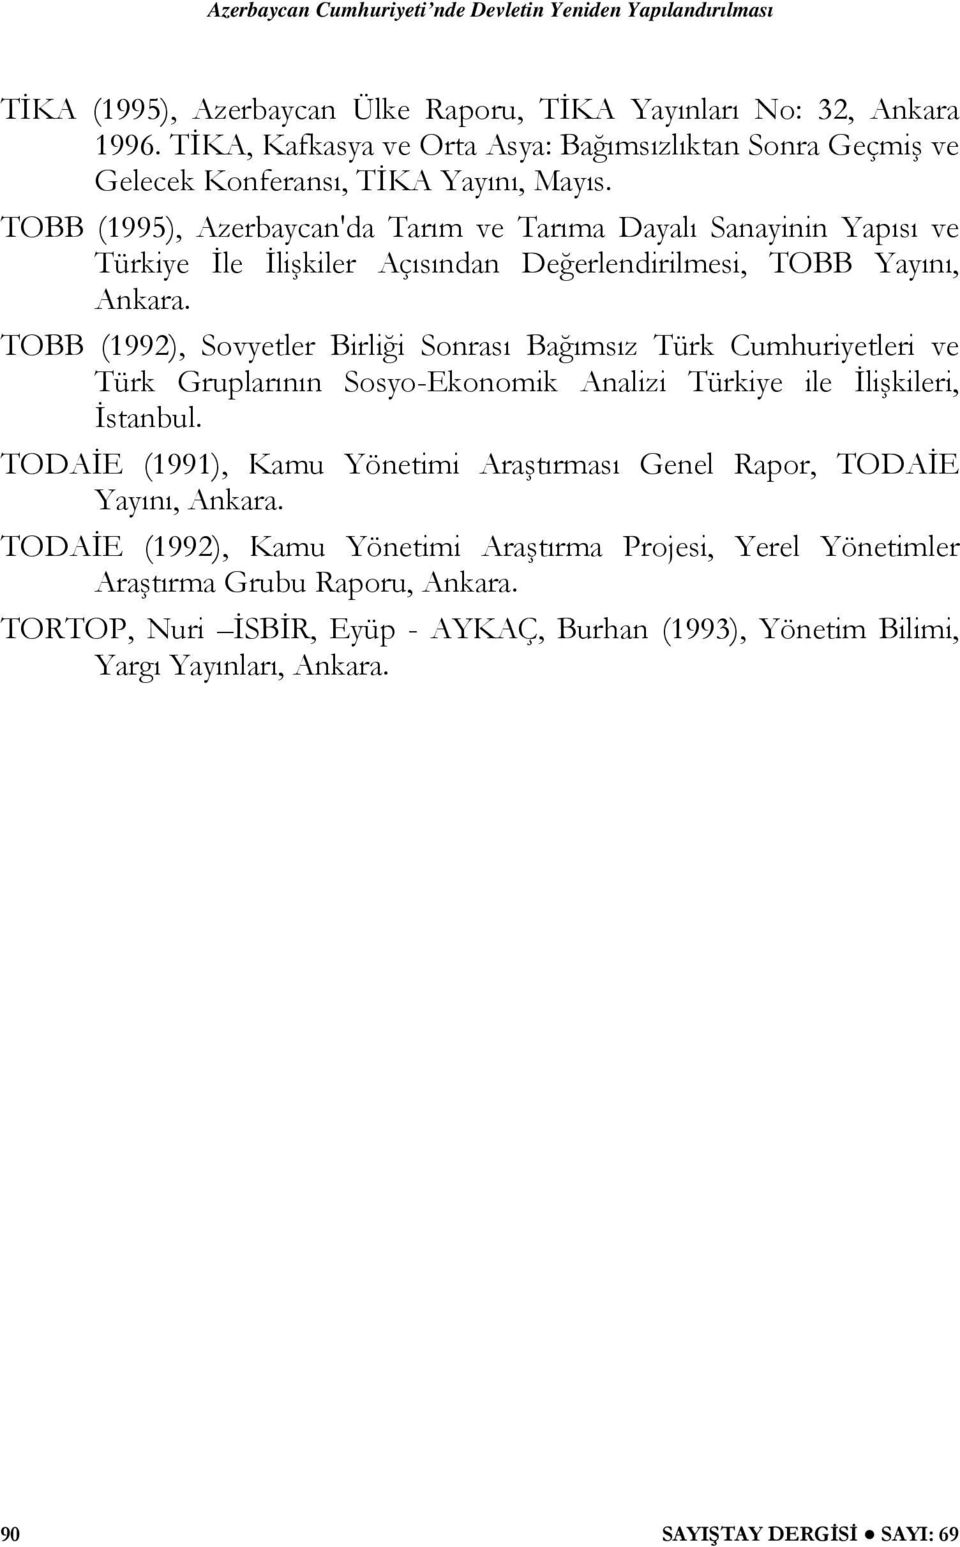 TOBB (1992), Sovyetler Birliği Sonrası Bağımsız Türk Cumhuriyetleri ve Türk Gruplarının Sosyo-Ekonomik Analizi Türkiye ile İlişkileri, İstanbul.